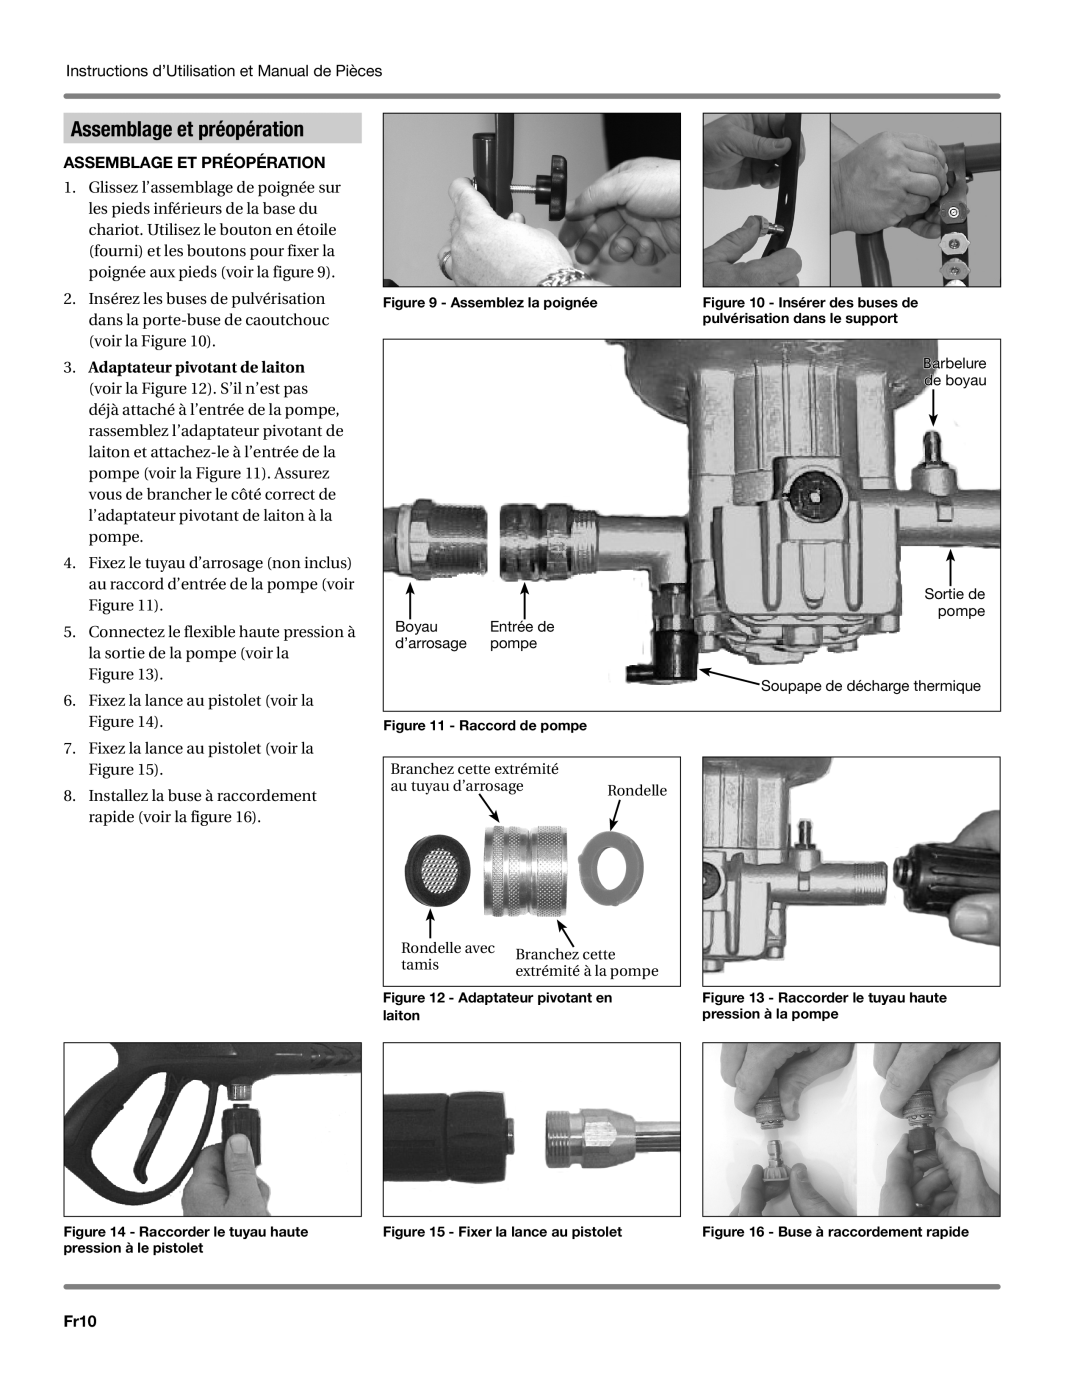 Campbell Hausfeld CP5101 manual Assemblage et préopération, Adaptateur pivotant de laiton, Fr10 